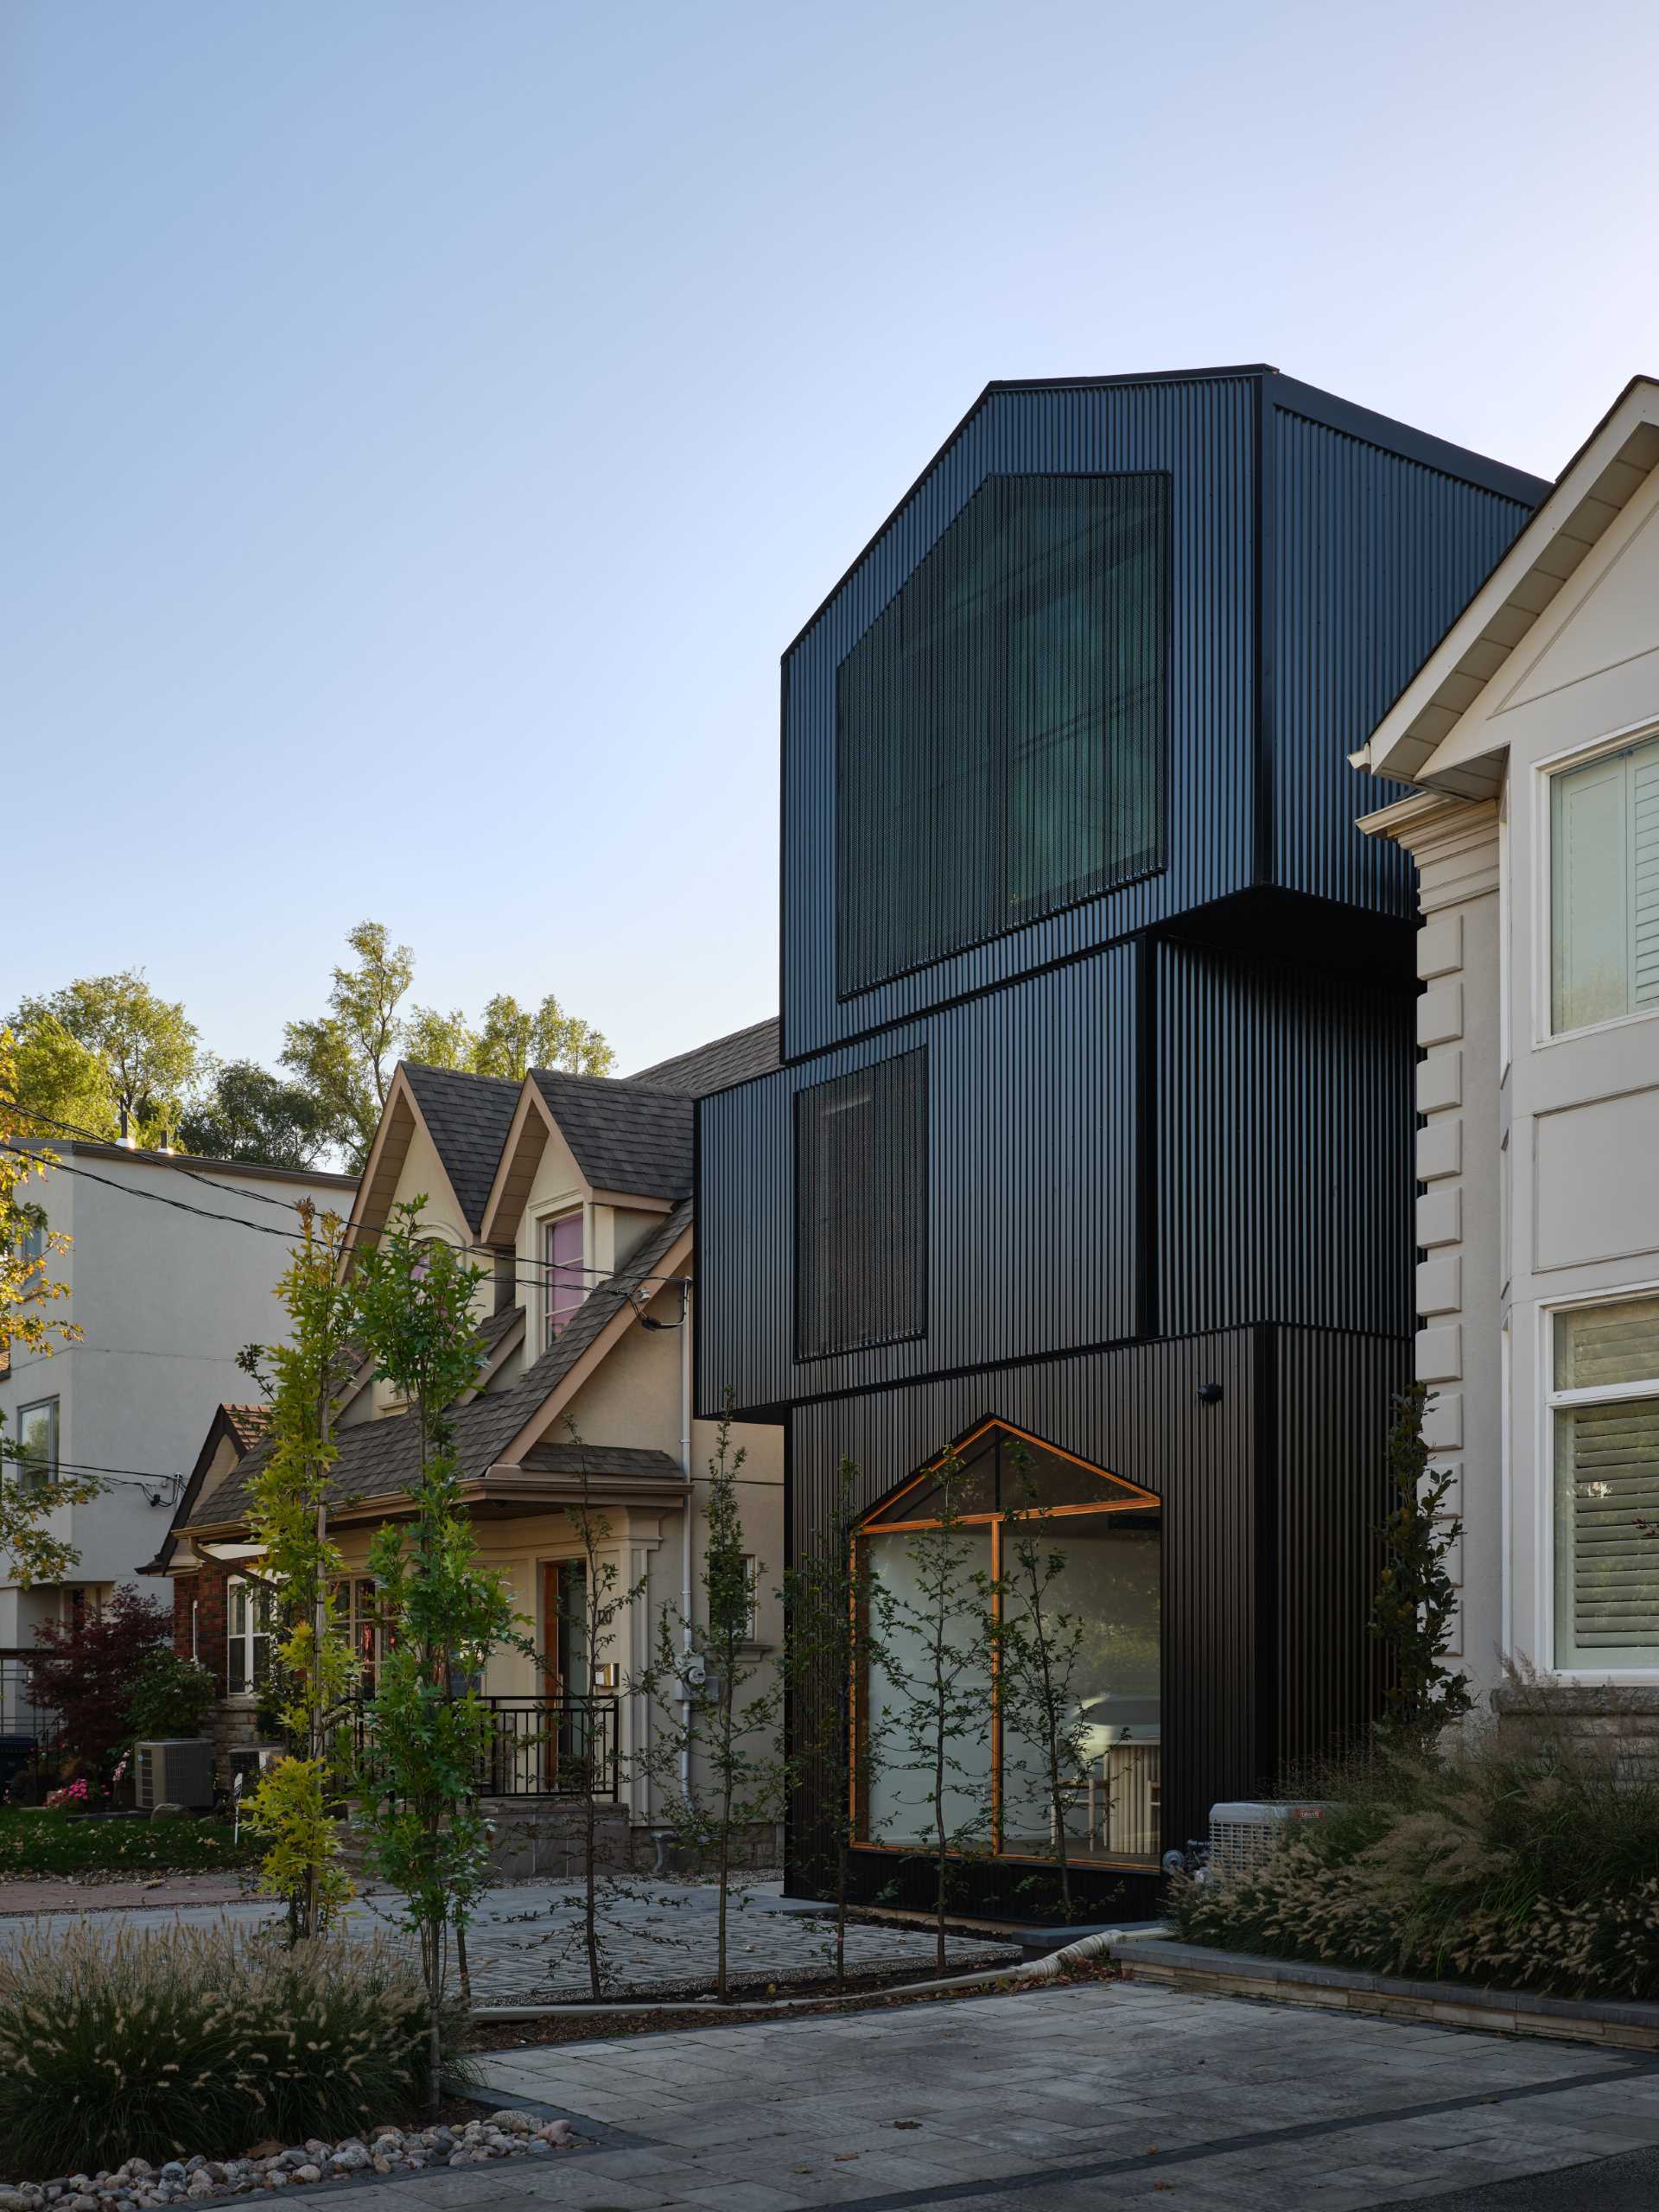 Locuința are un acoperiș în două frontoane și apare ca o serie de cutii negre stivuite, cu diferite niveluri care definesc diferitele zone ale casei.